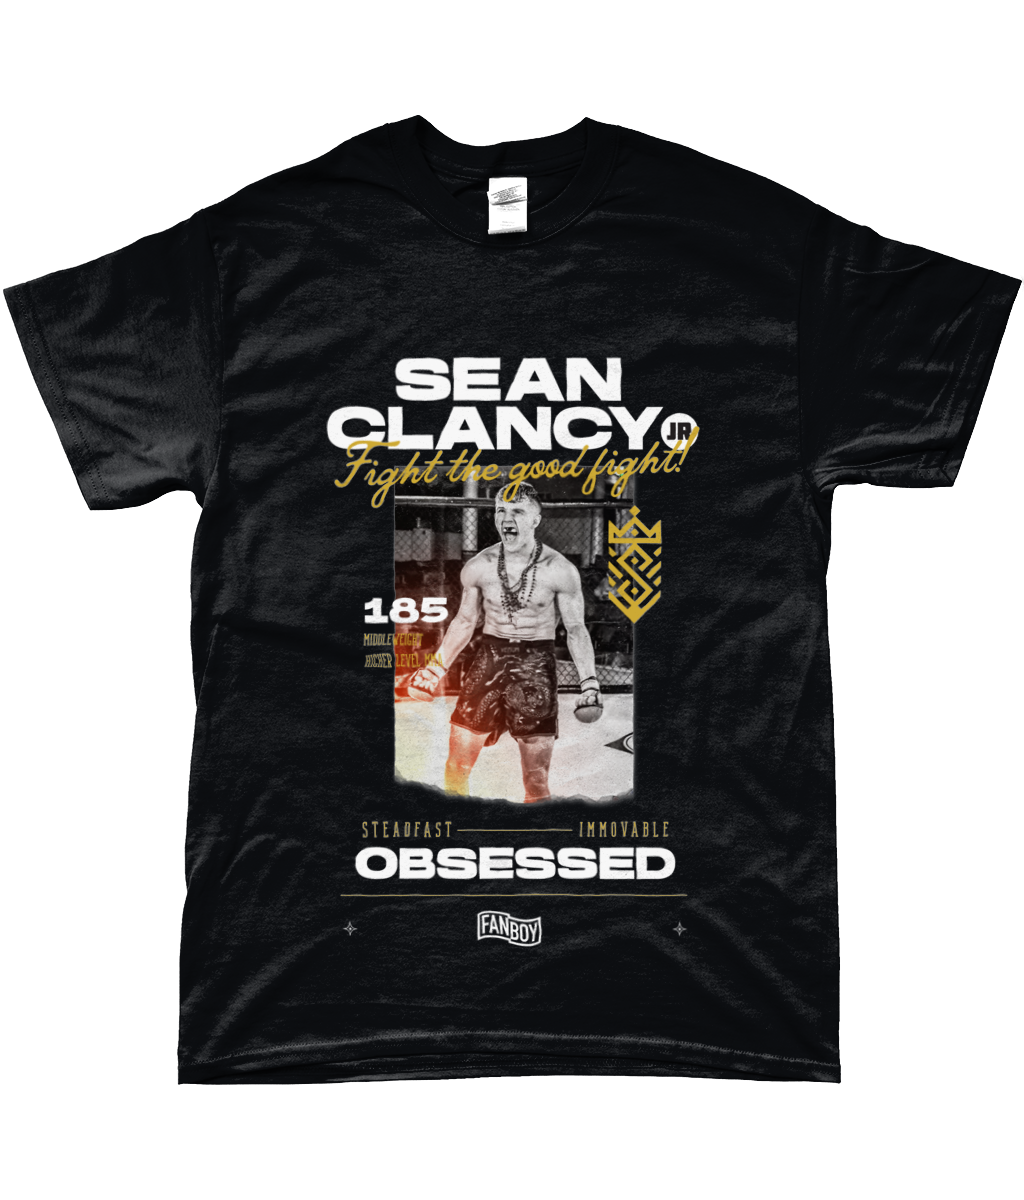 Sean Clancy Fanboy T-shirt